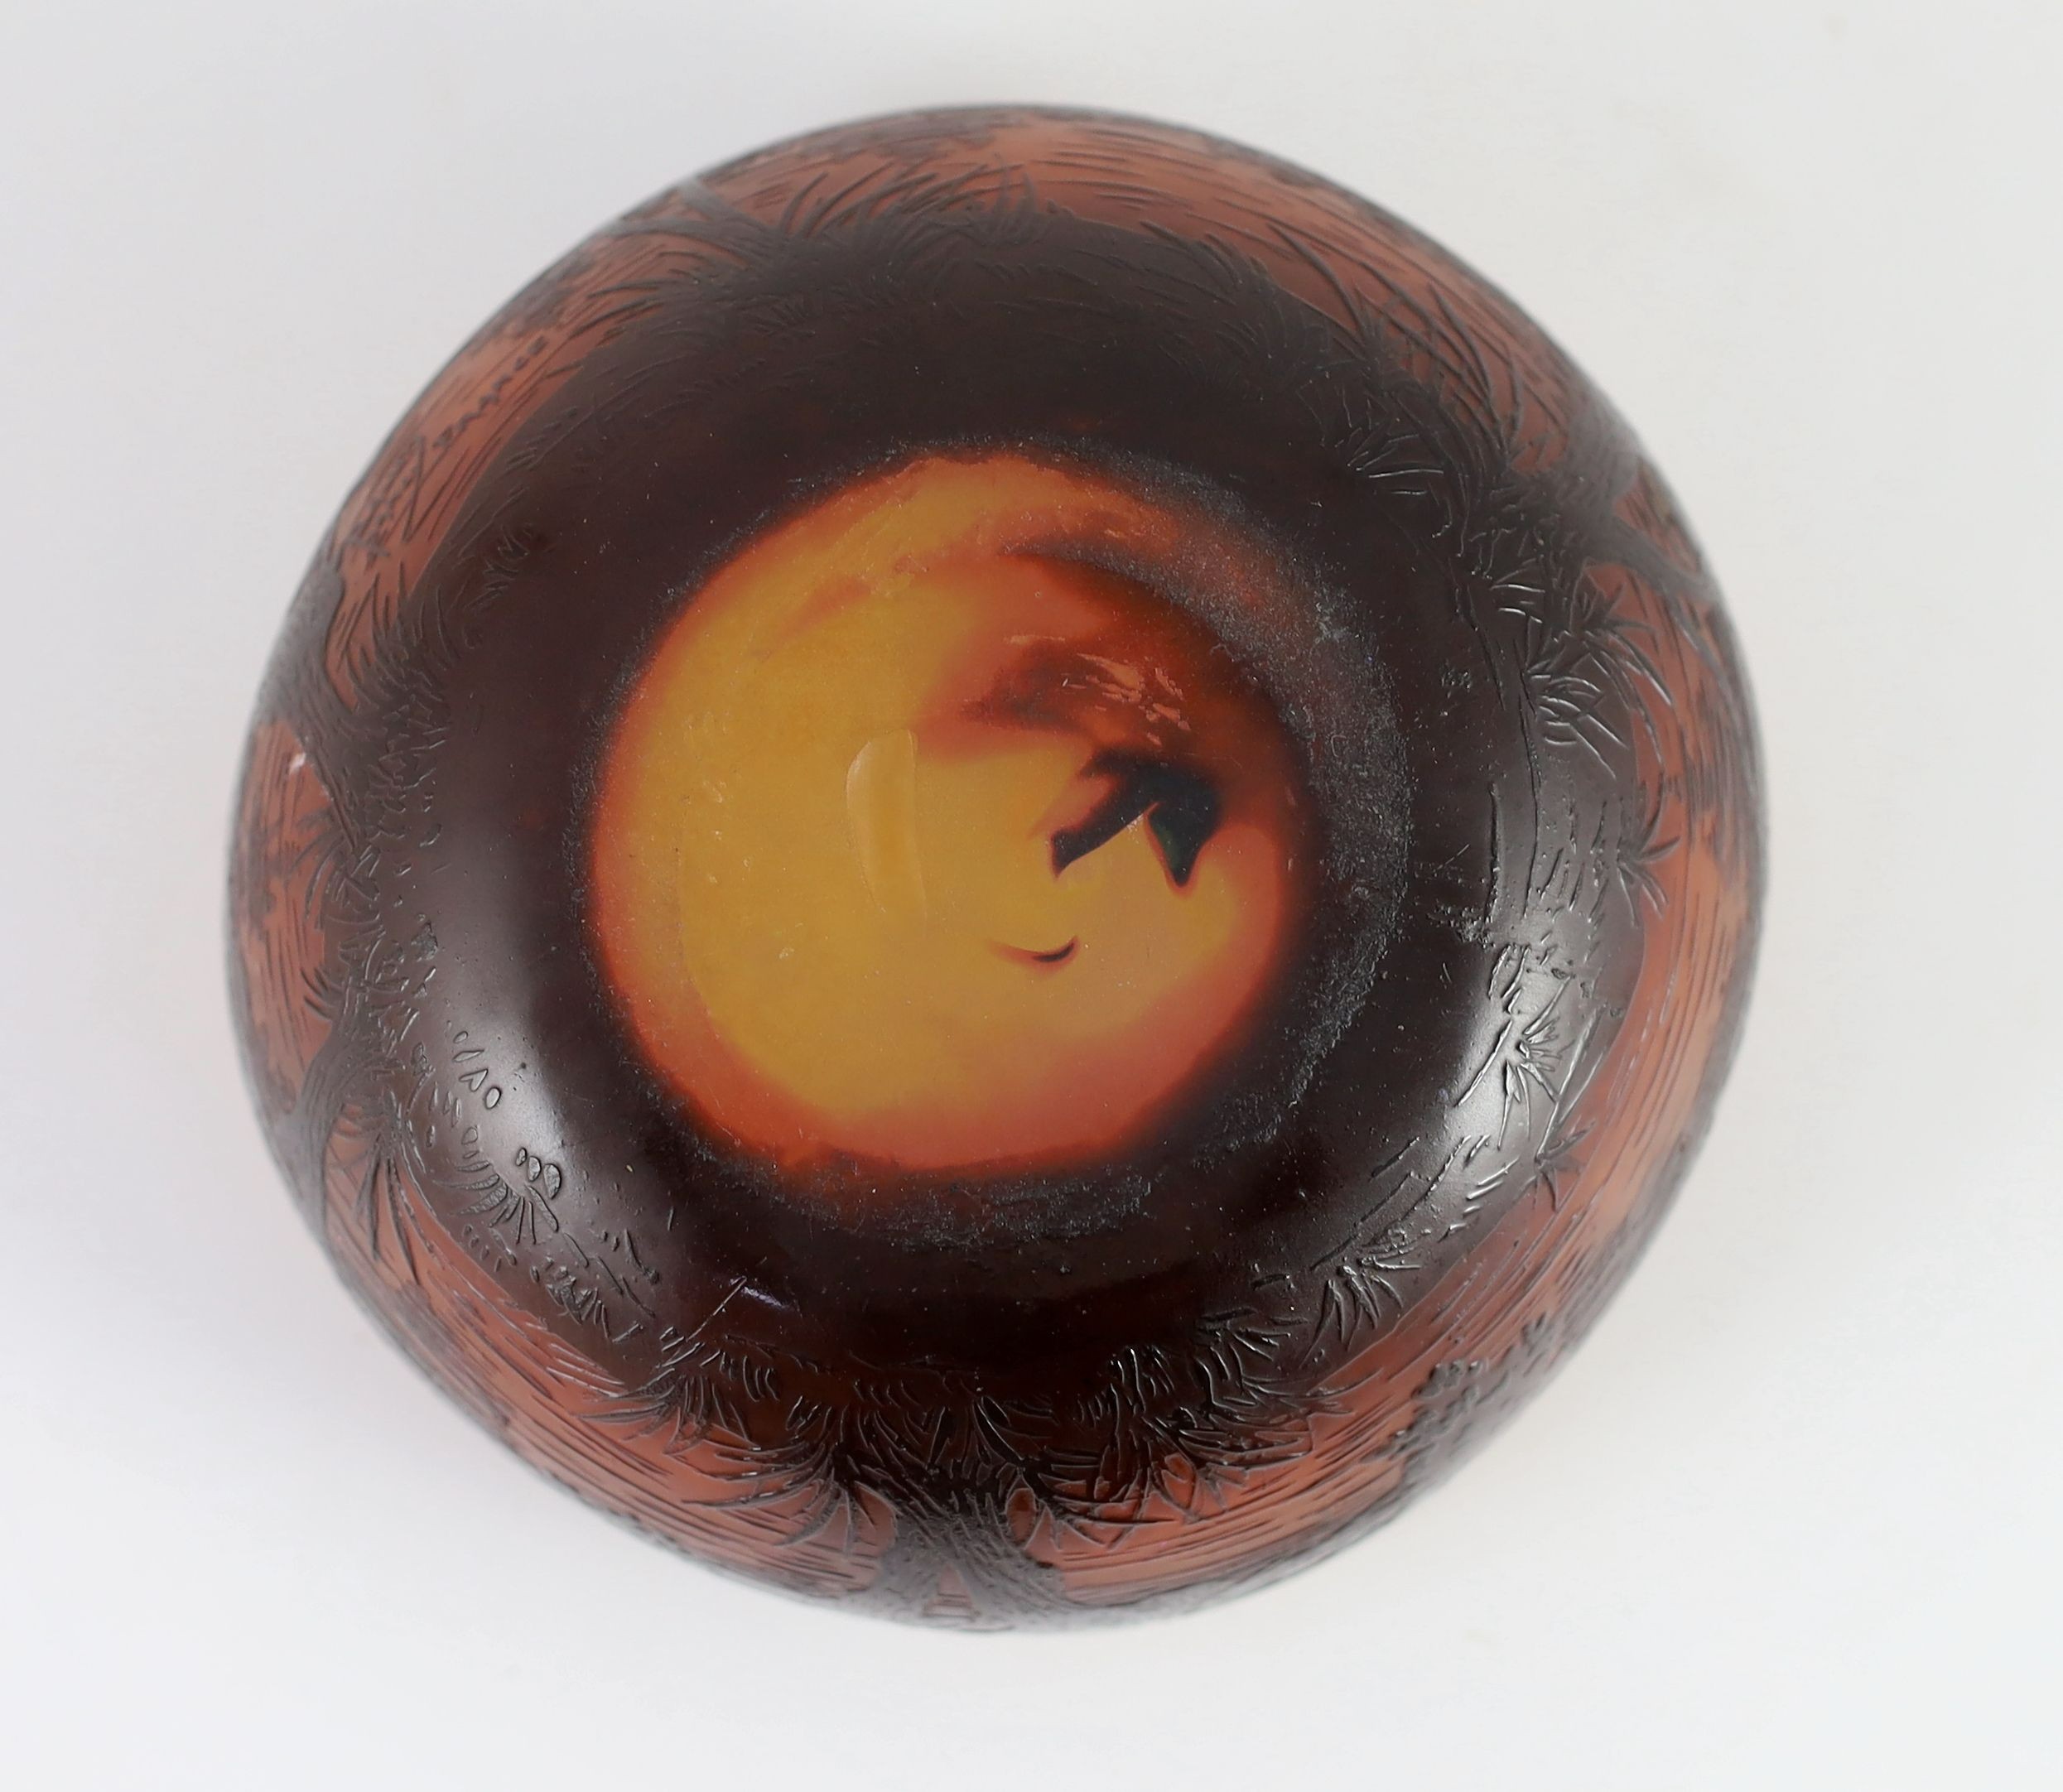 A Daum cameo glass ‘dusk river landscape’ bowl, c.1905, 15.5 cm wide